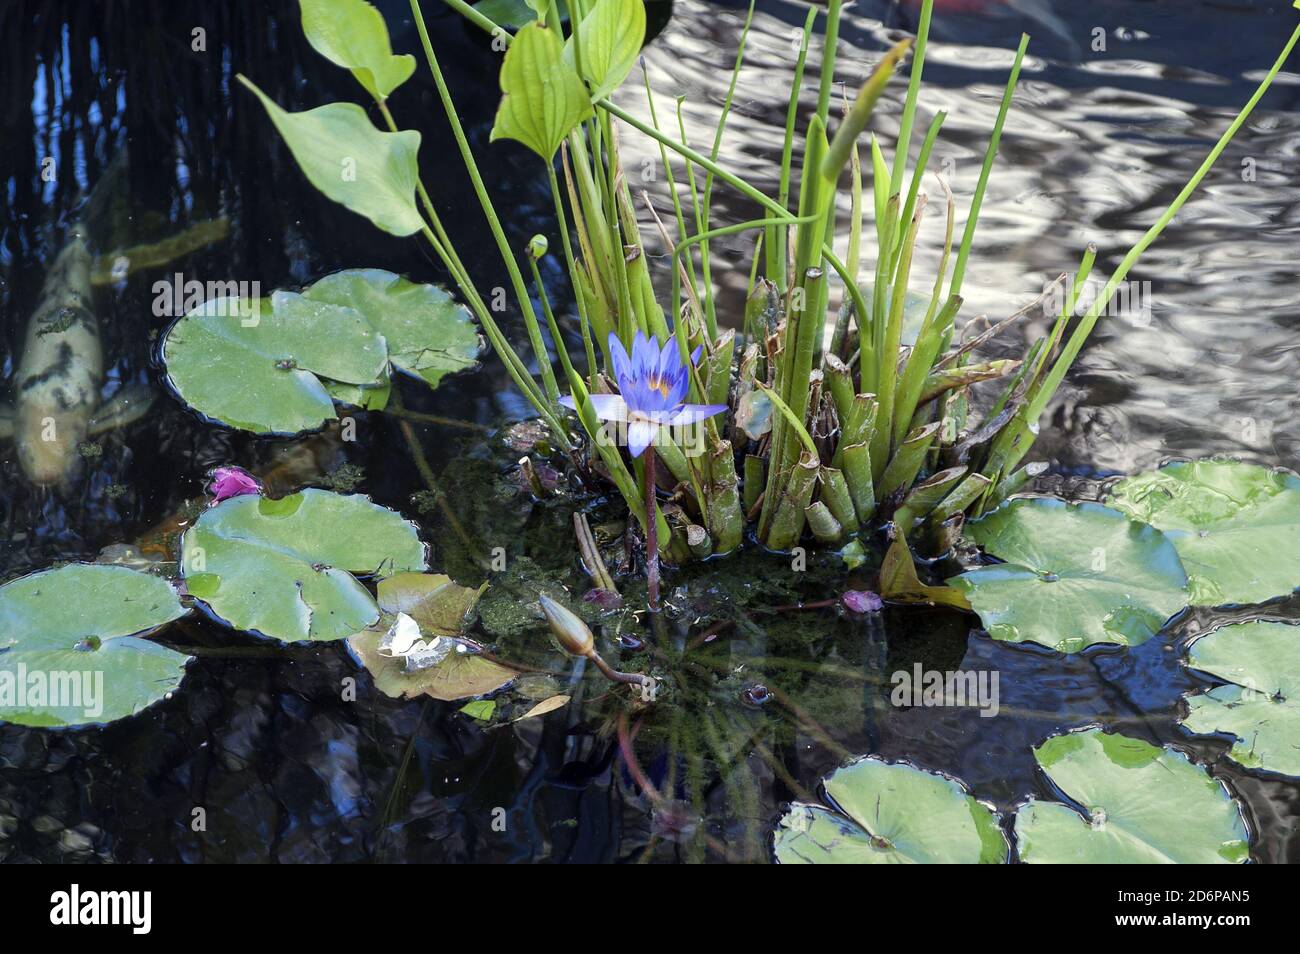 Israel, Izrael, ישראל; A pond, a small pond with a blue water lily. Ein Teich, ein kleiner Teich mit einer blauen Seerose. בריכה עם שושן מים כחול. 白睡莲 Stock Photo